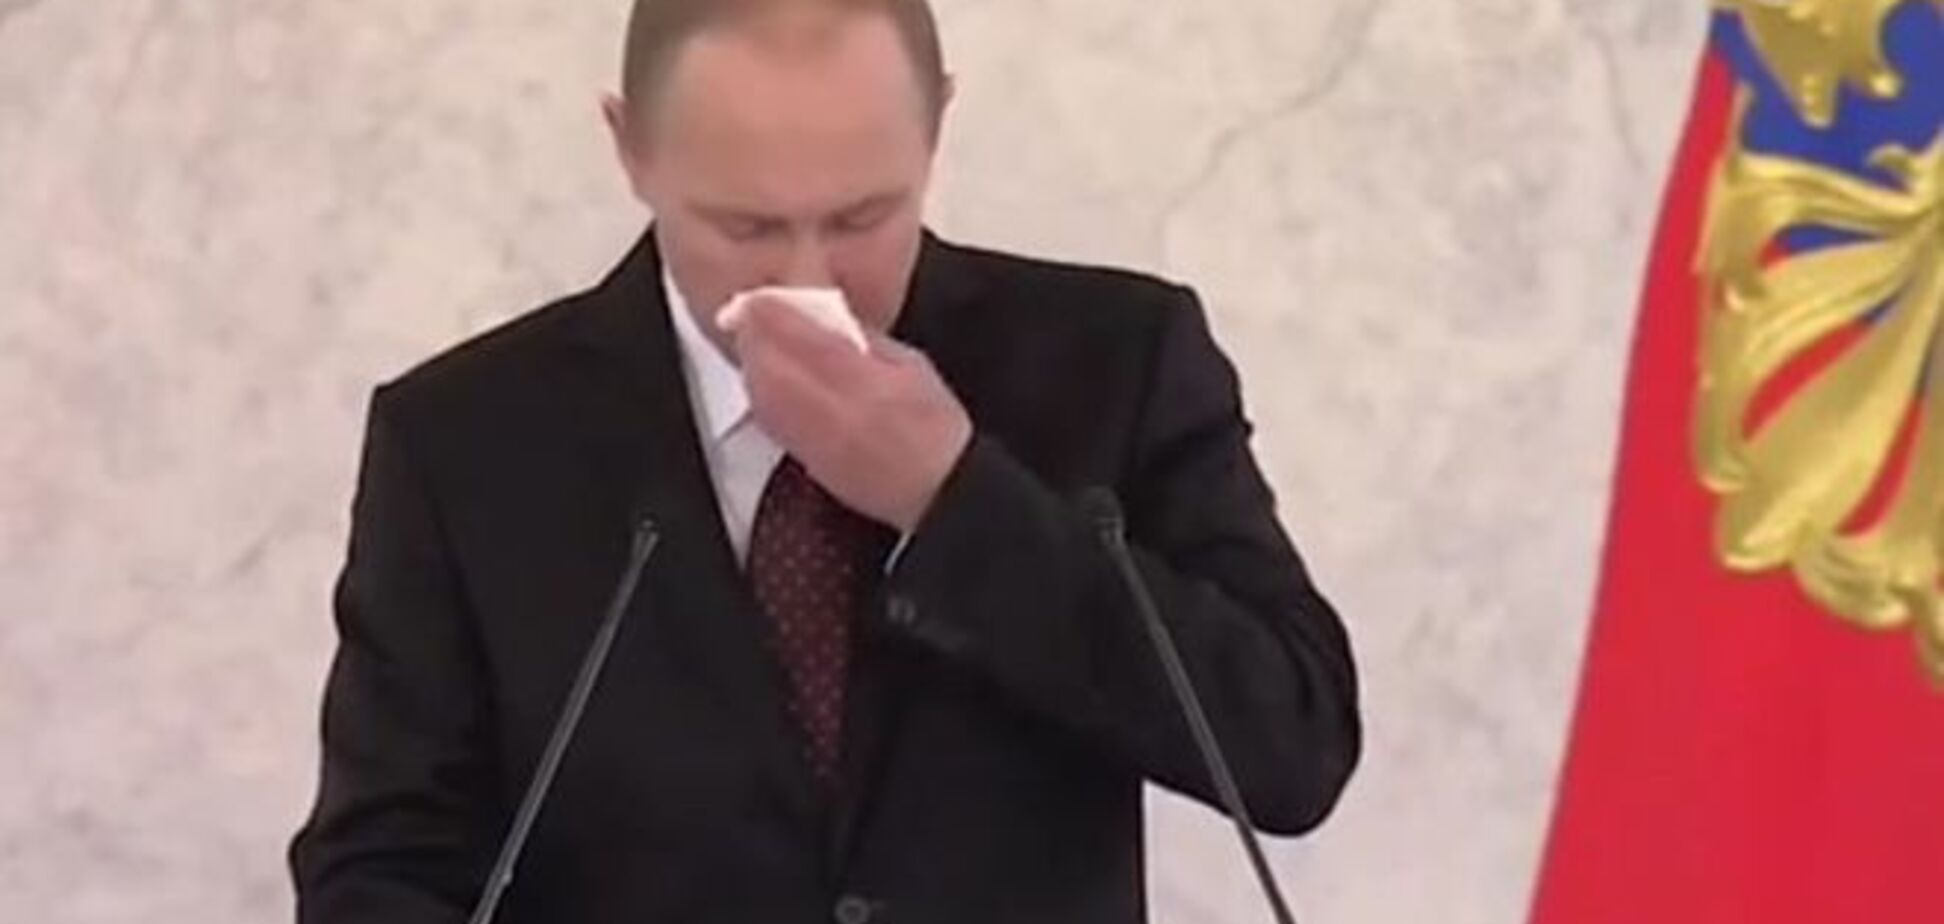 Без лишних слов: видеопародия на чавкающего, 'э-кающего' и сморкающегося Путина взорвала сеть